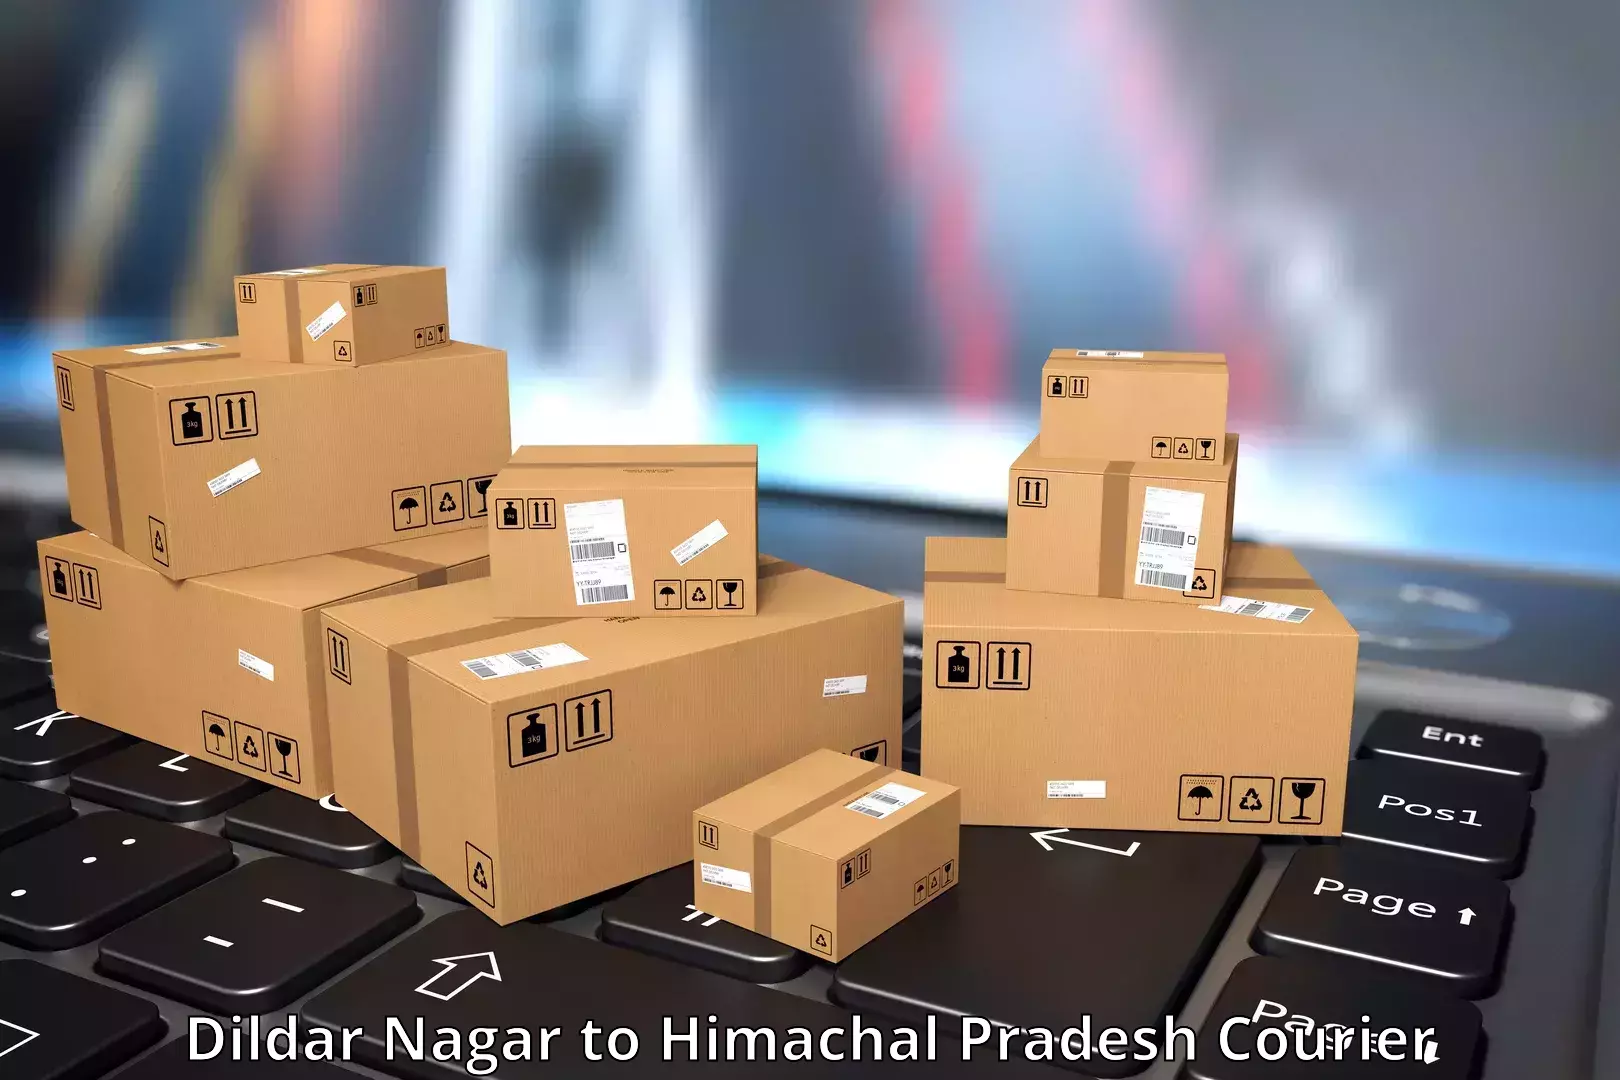 24/7 shipping services Dildar Nagar to Nalagarh